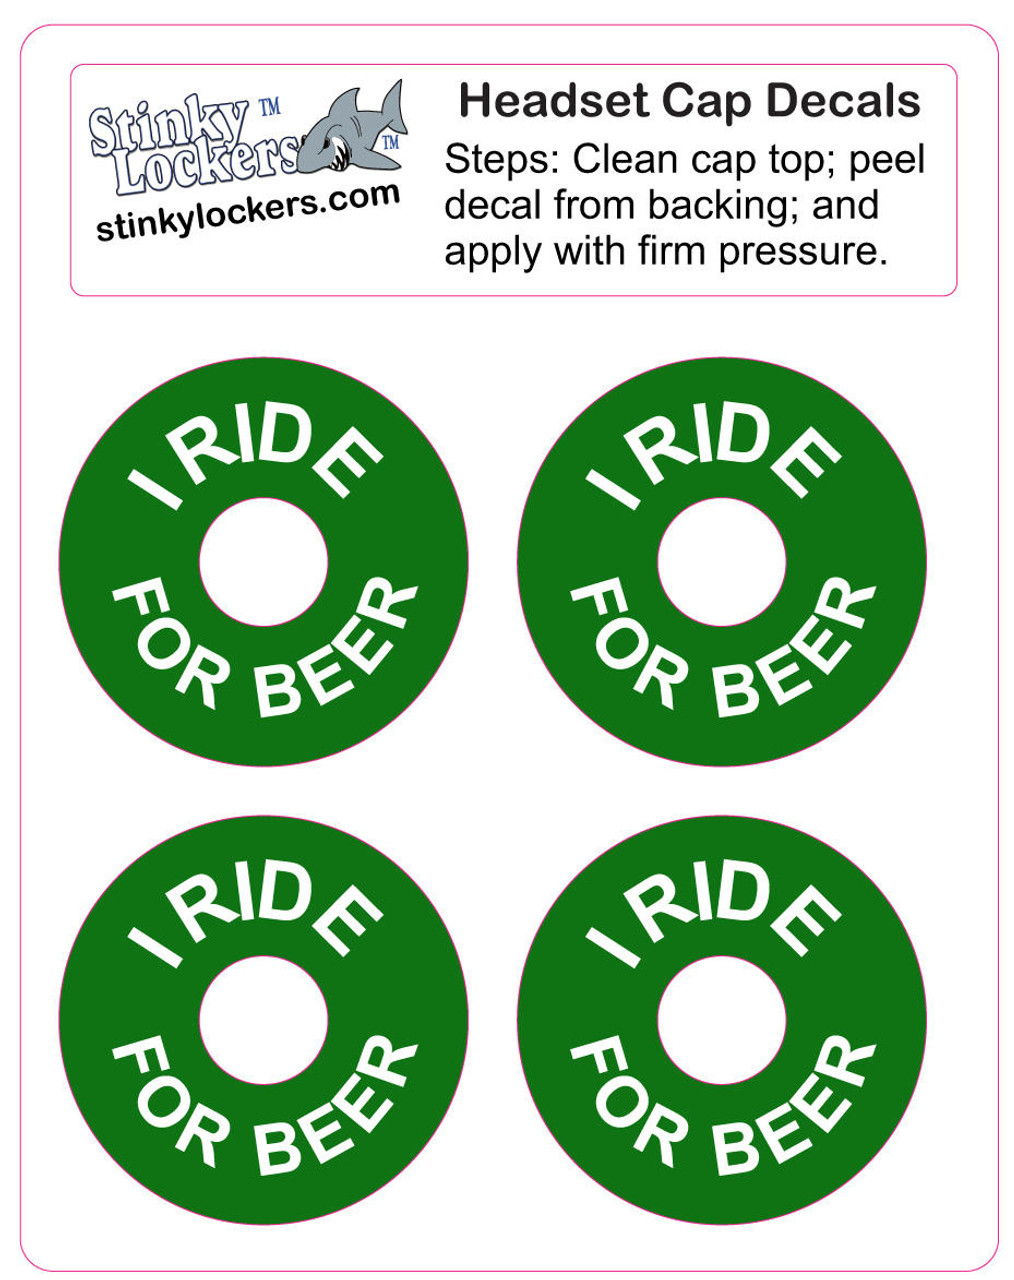 Ride for Beer Headset Top Cap Decals-Set of 4